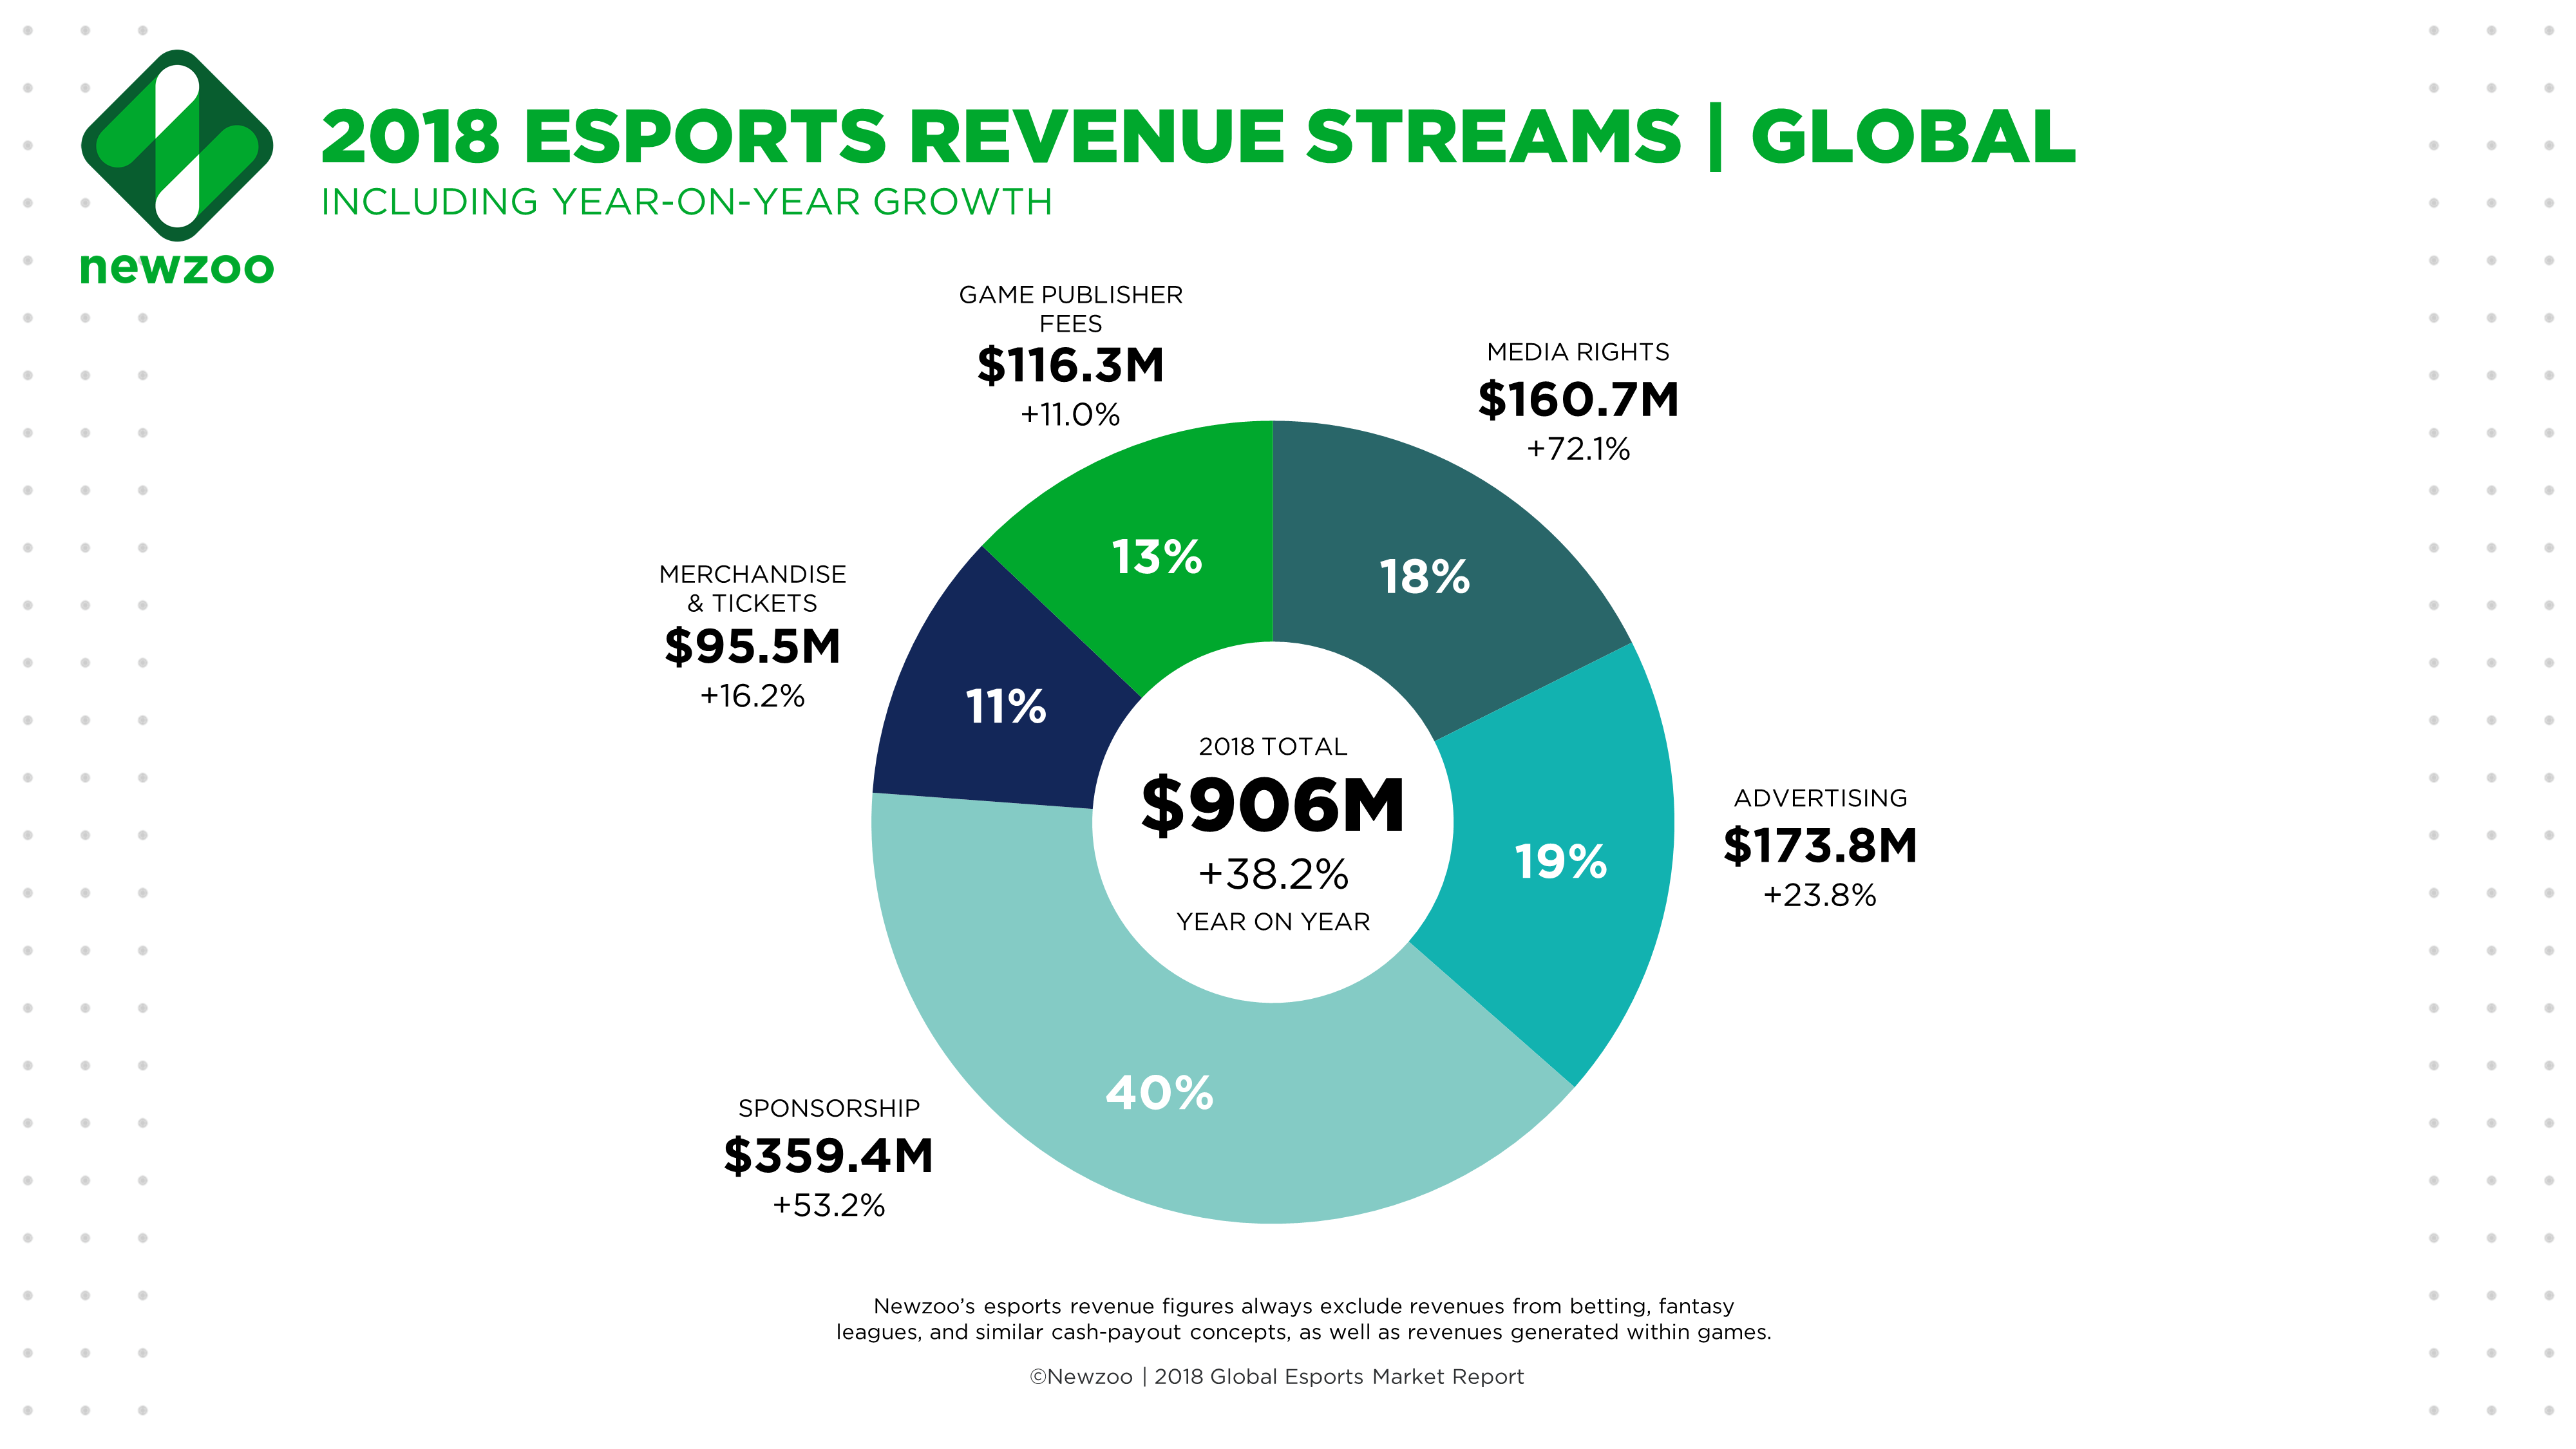 eSports Revenue